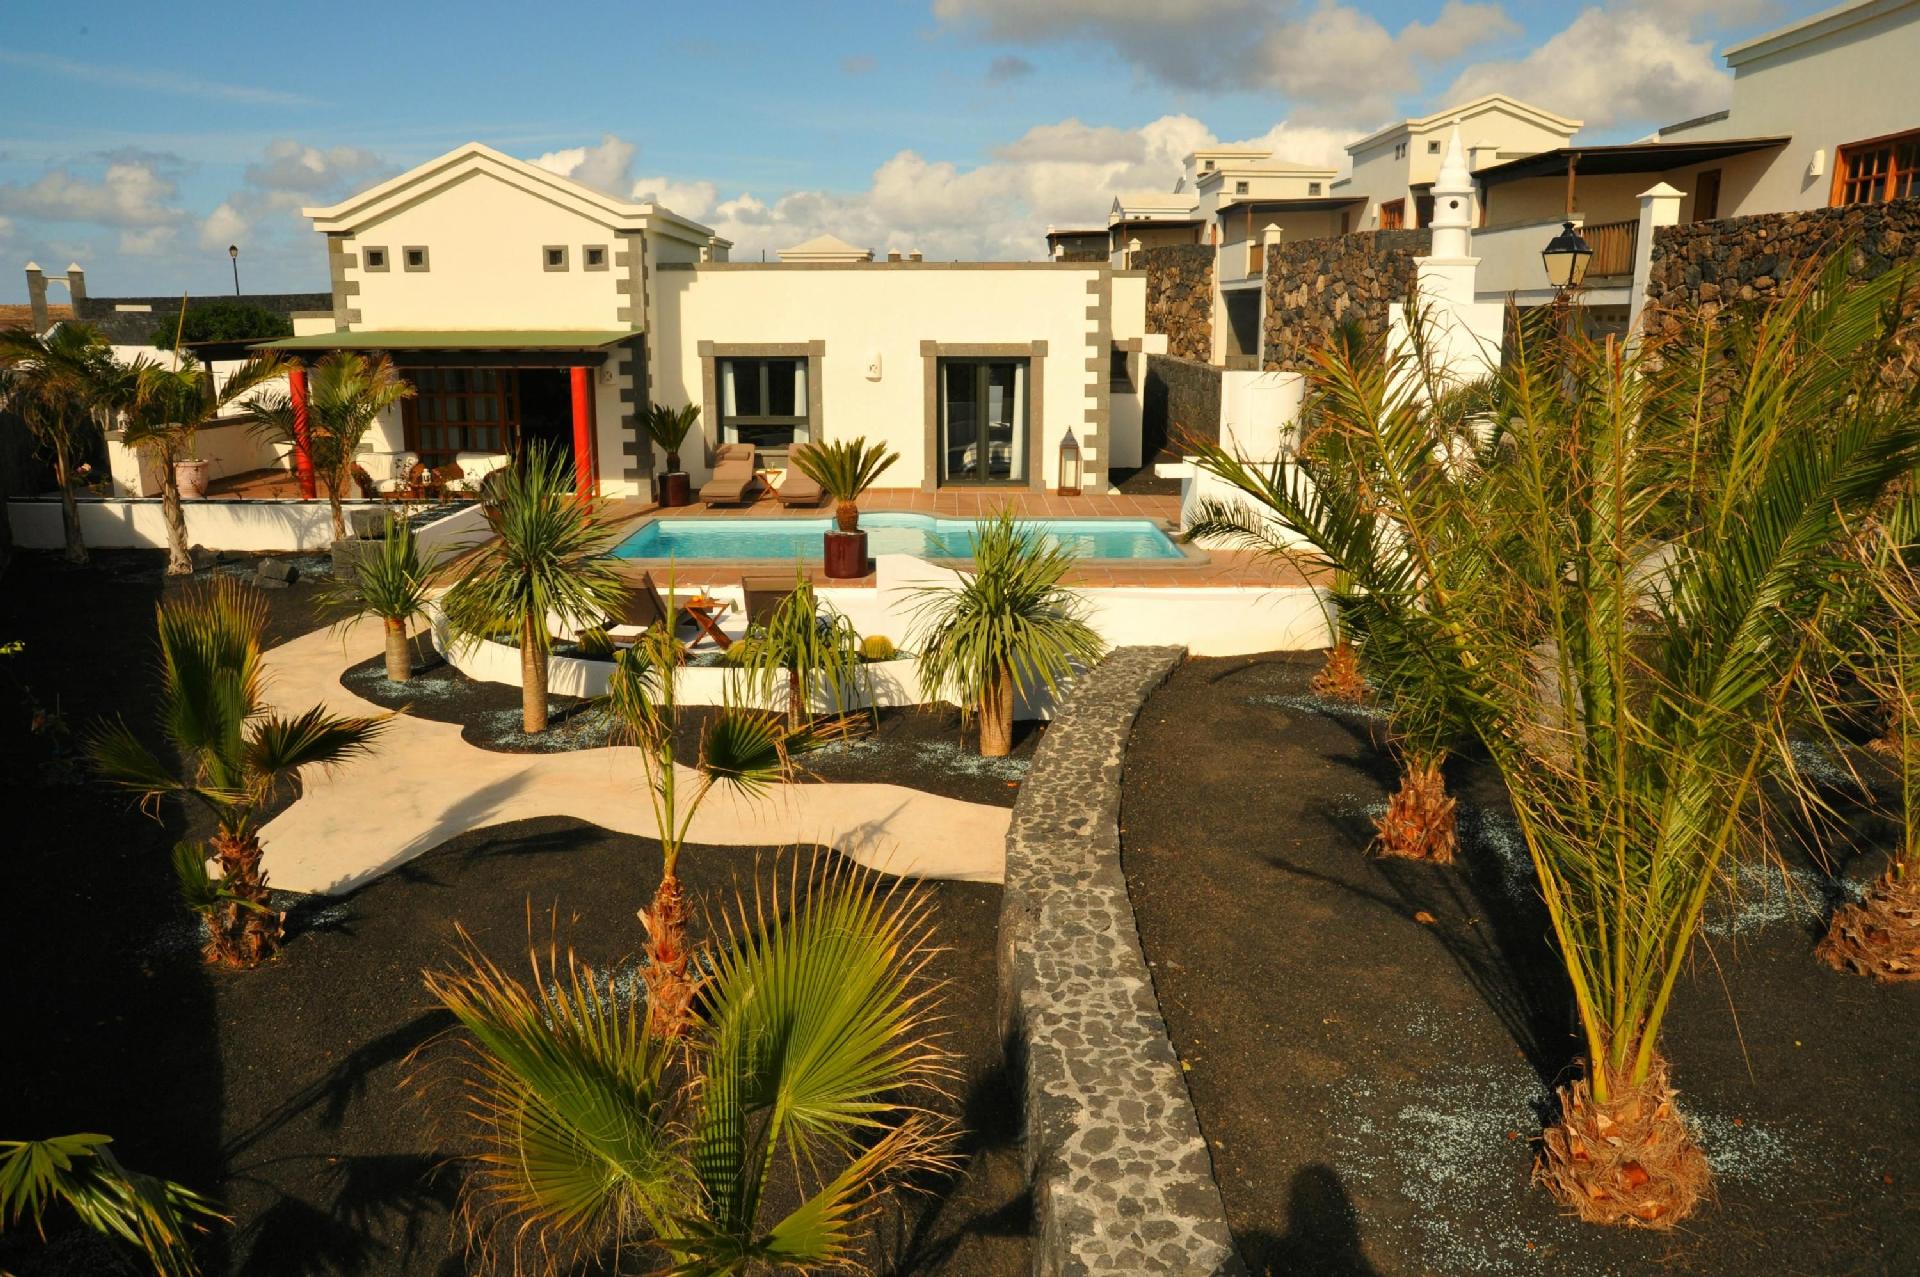 Modern eingerichtetes Ferienhaus mit Pool im Garte   Kanaren